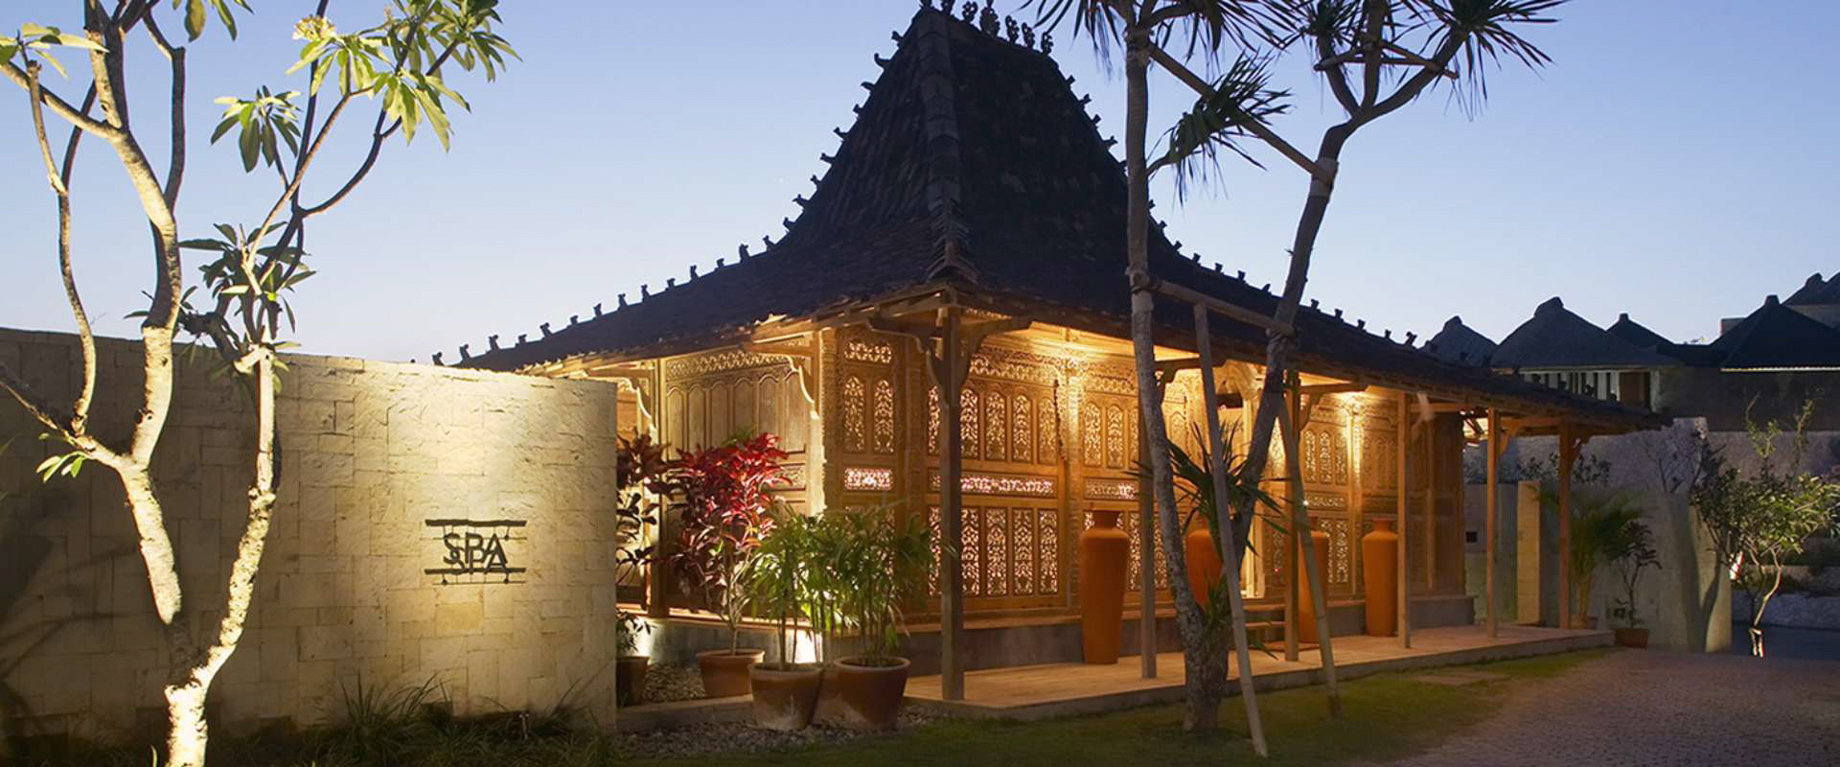 Bvlgari Resort Bali – Uluwatu, Bali, Indonesia – The Bvlgari Spa Exterior Sunset